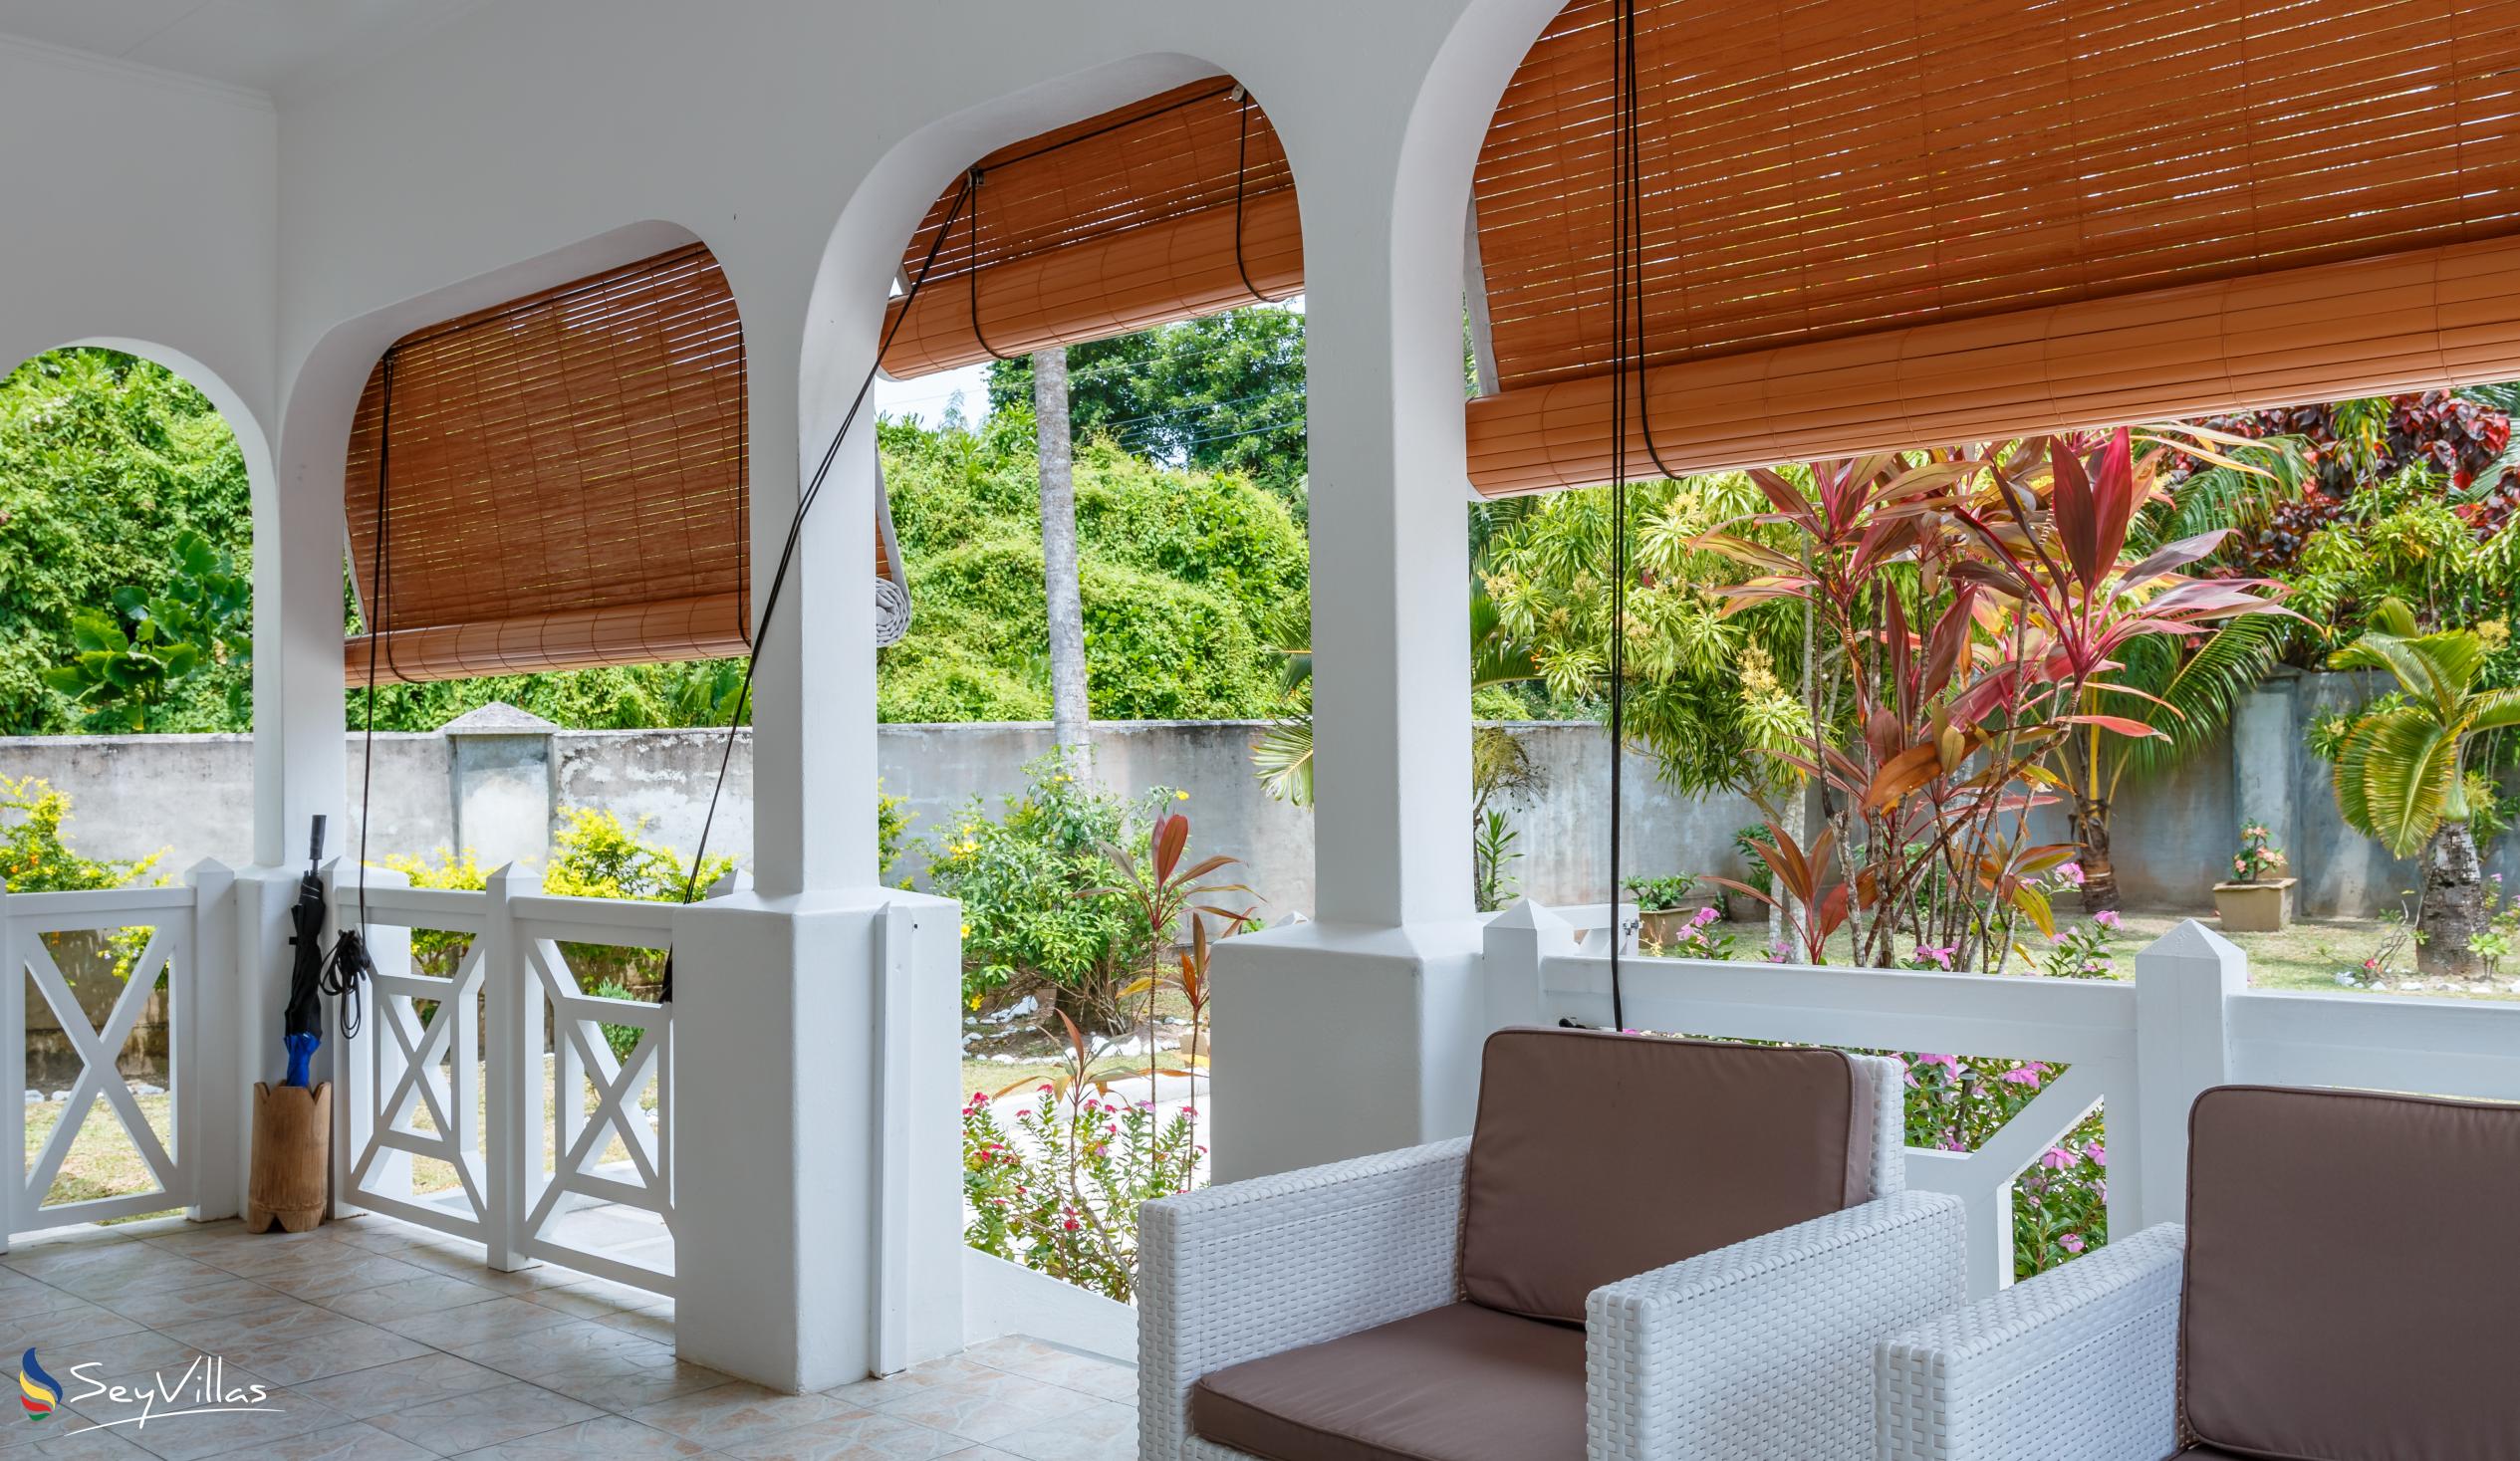 Foto 27: Coco Blanche (Maison Coco) - Villa Completa - Mahé (Seychelles)